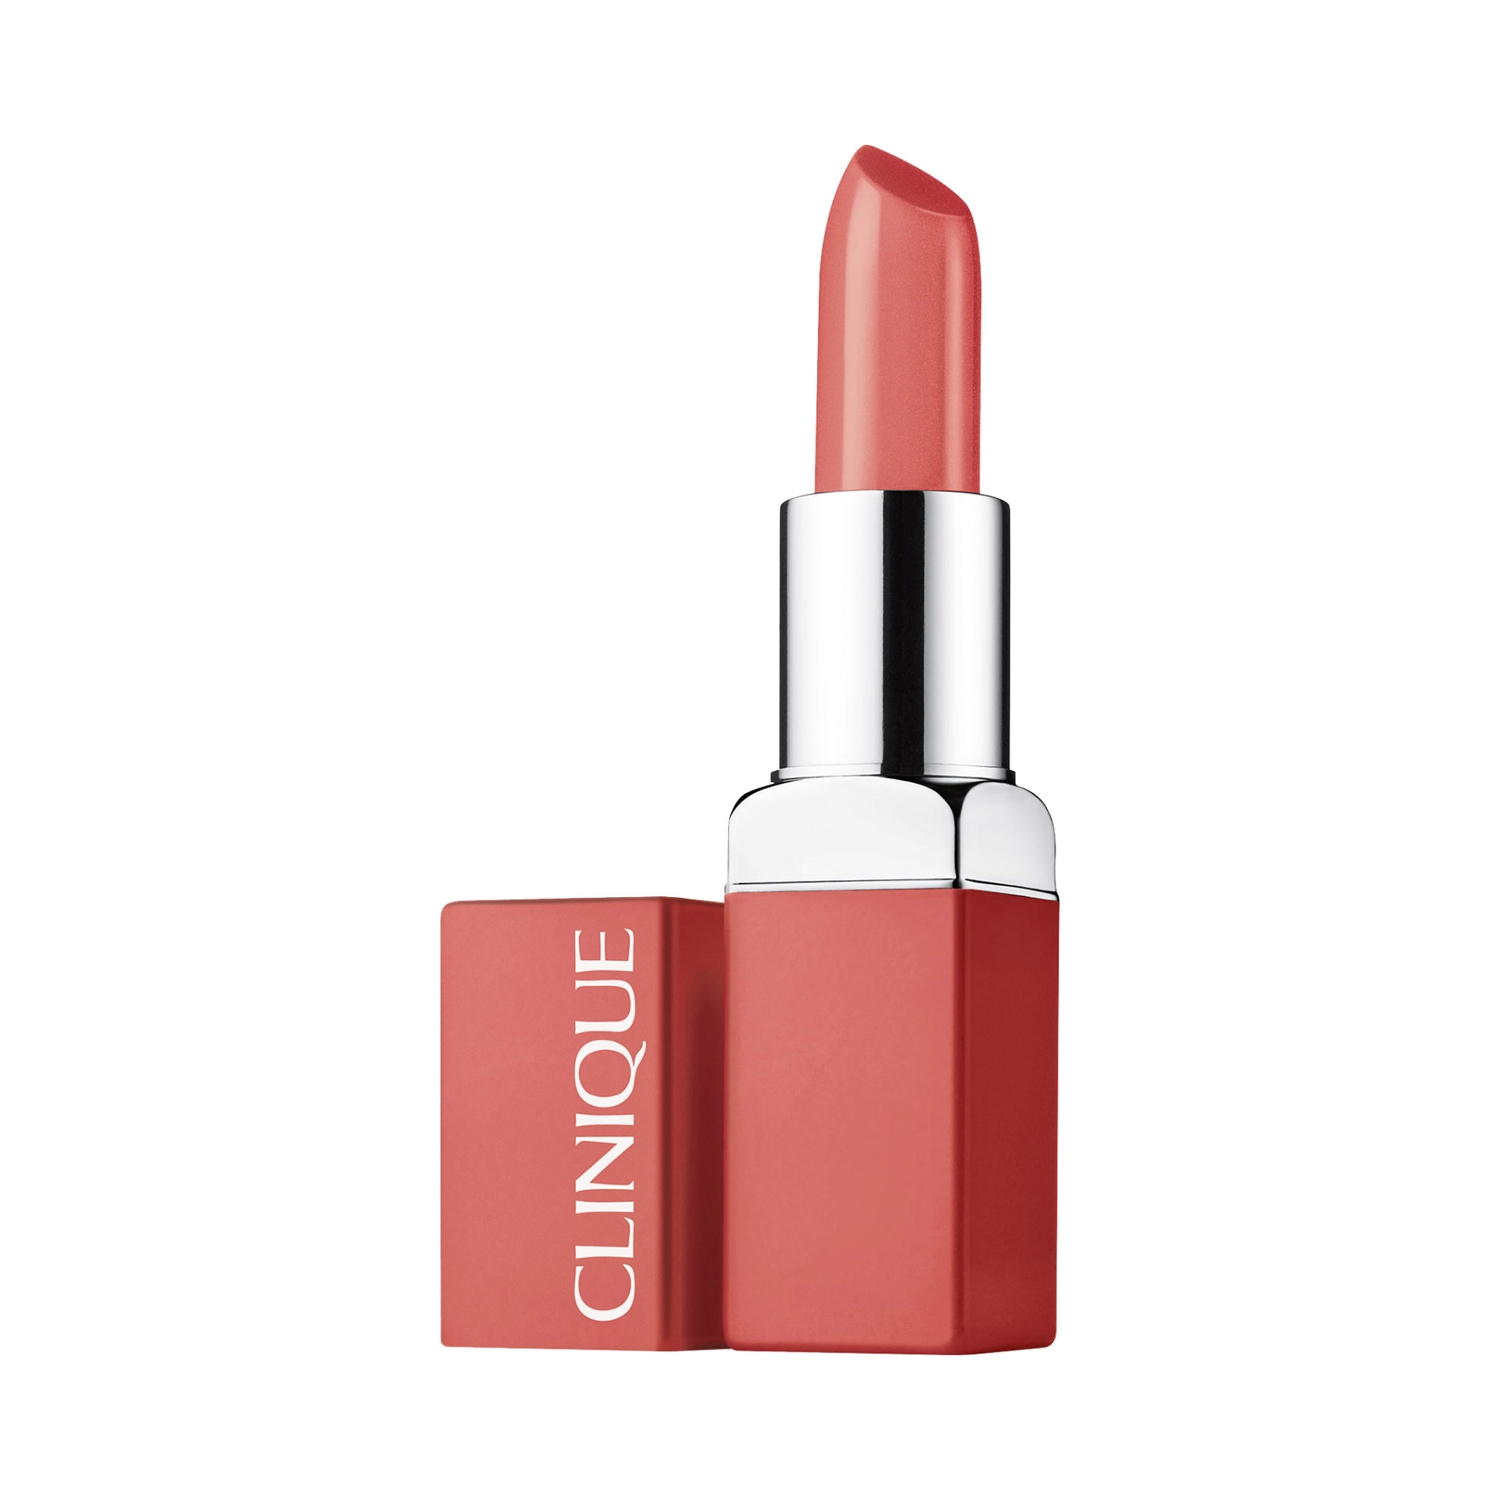 CLINIQUE Even Better Pop Lip Colour Foundation - Romanced (3.9g)